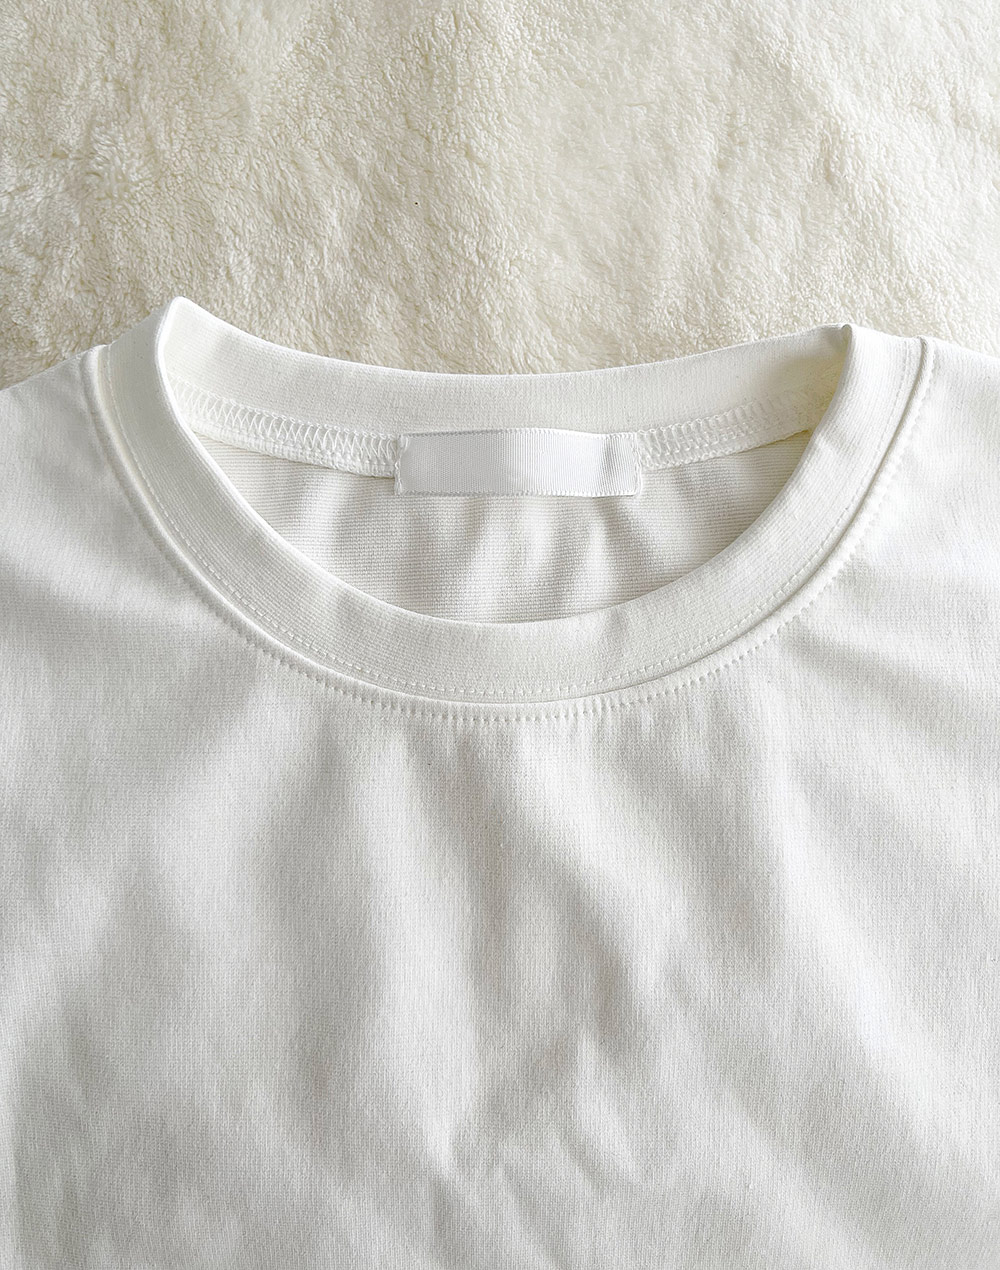 フレンチスリーブTシャツ・b278163（トップス/Tシャツ）| aiko.01234 | 東京ガールズマーケット